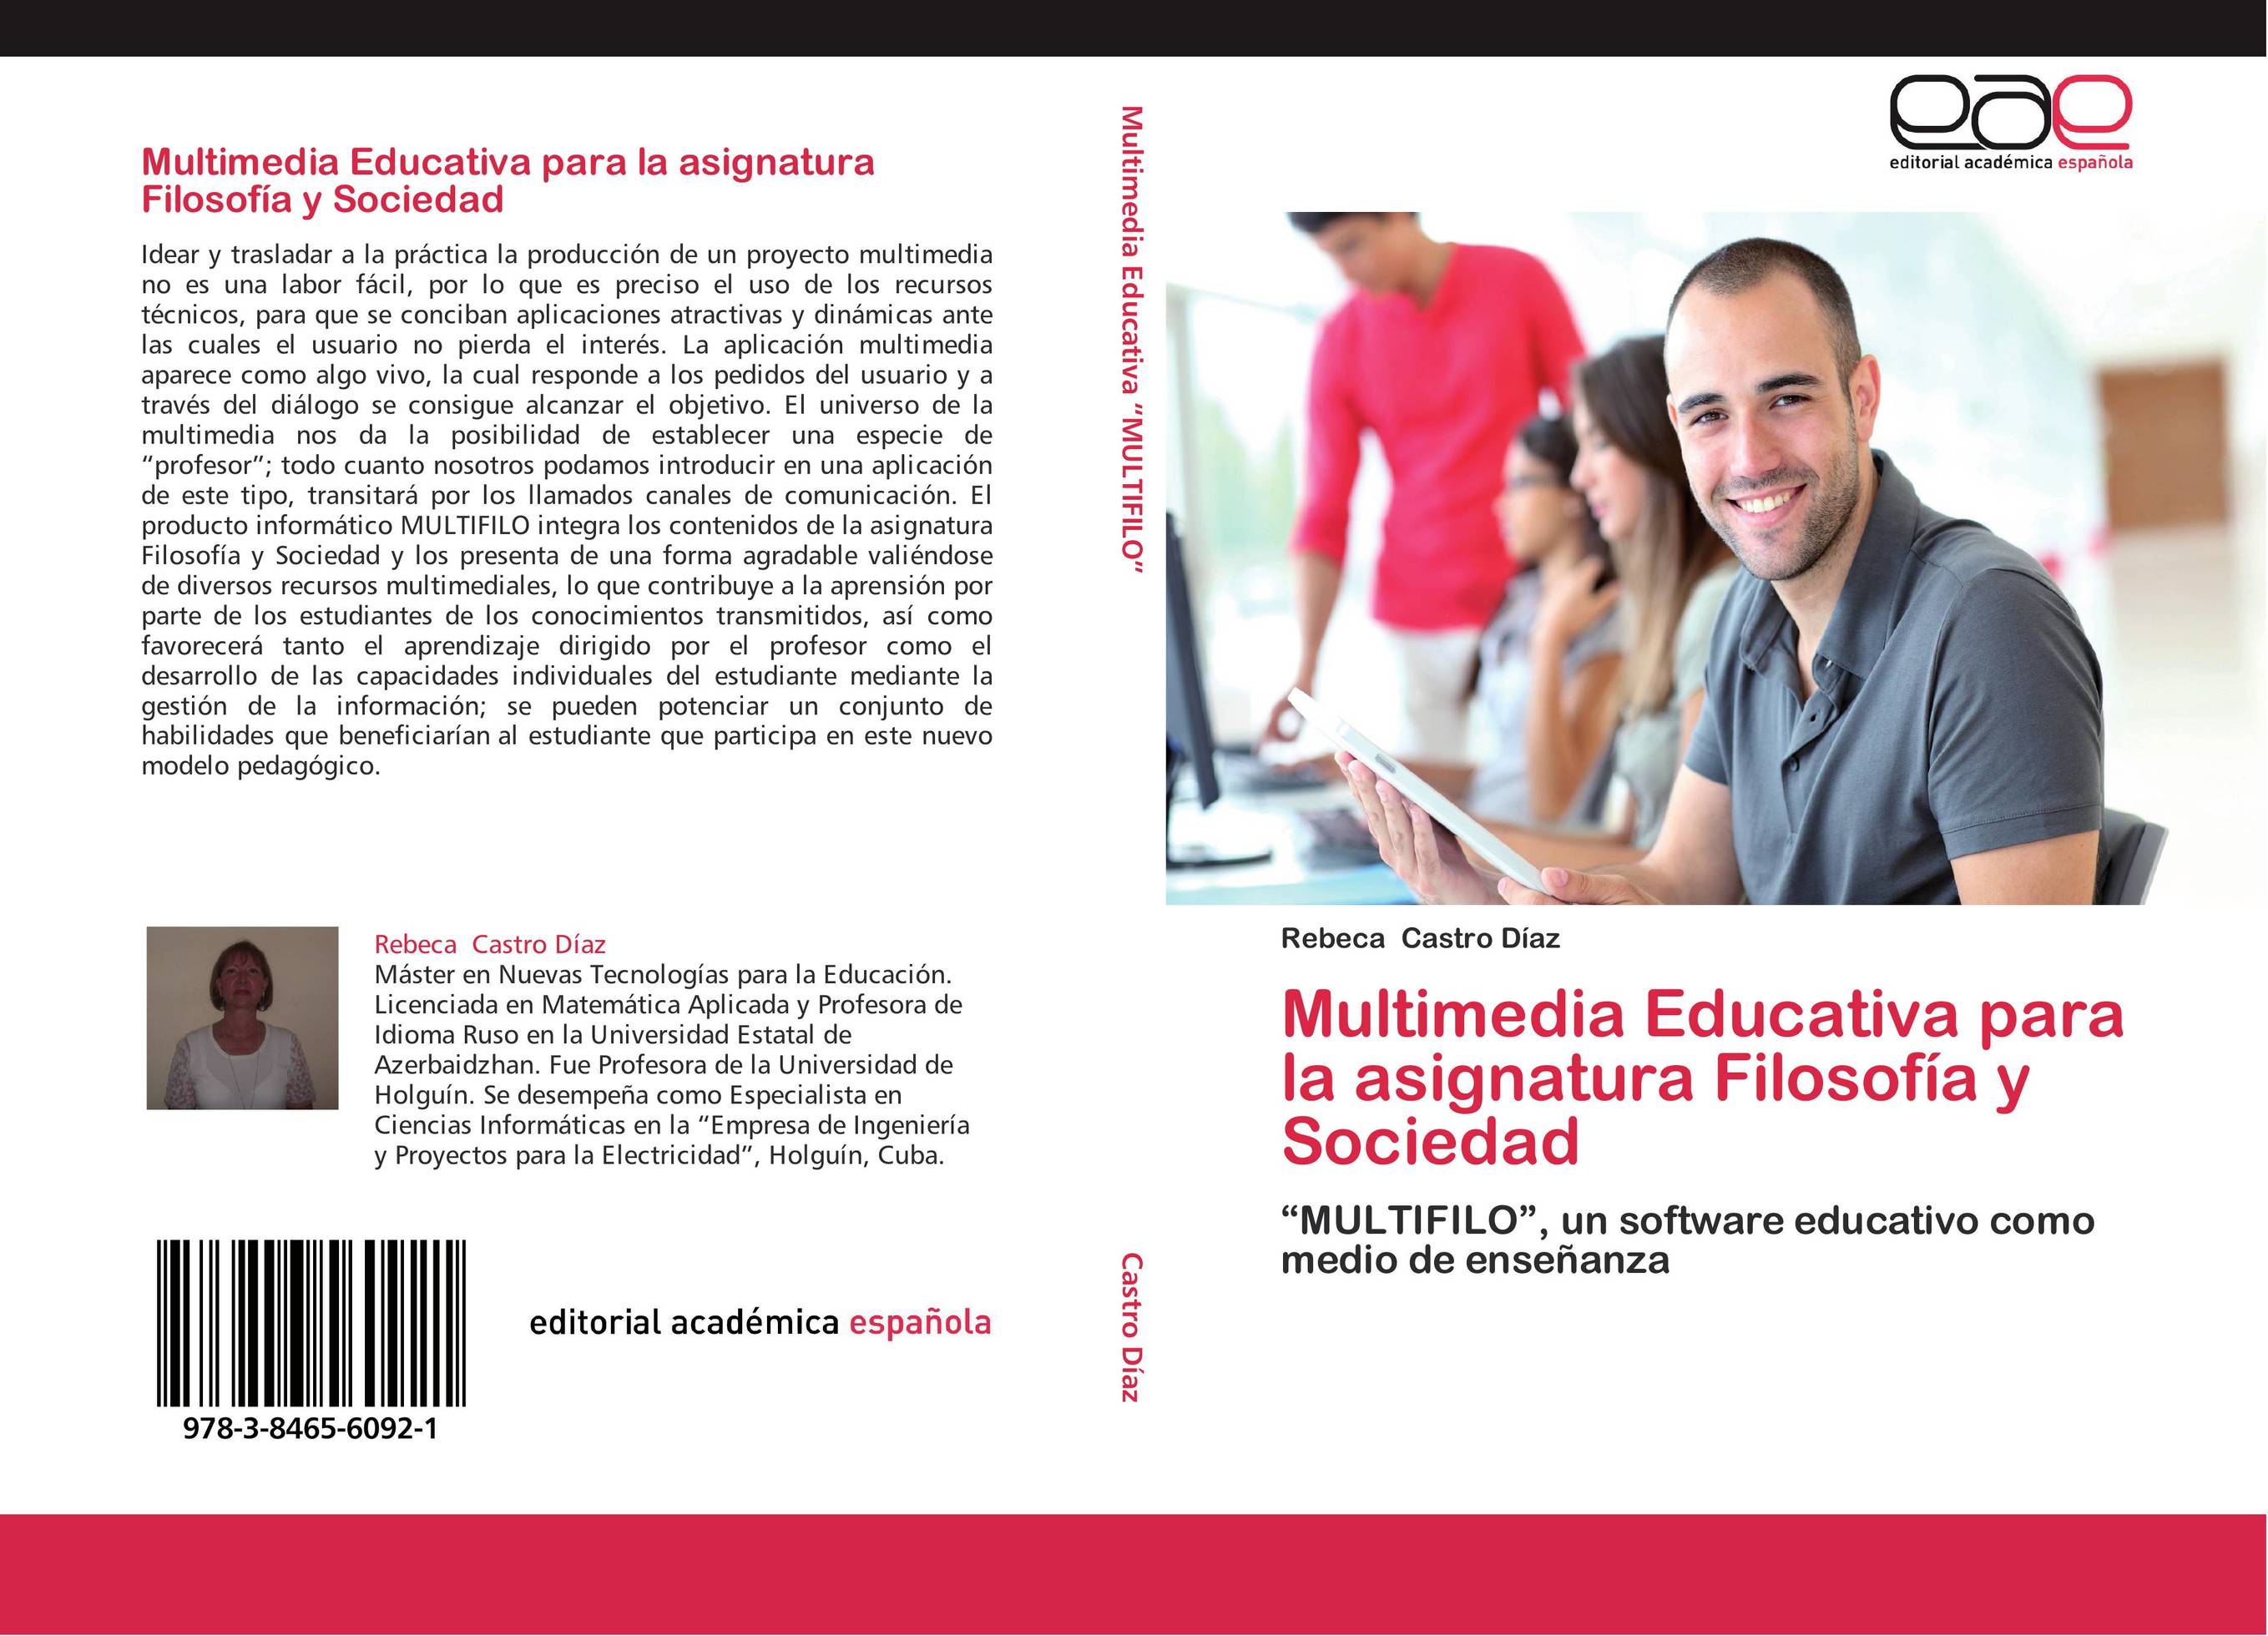 Multimedia Educativa para la asignatura Filosofía y Sociedad